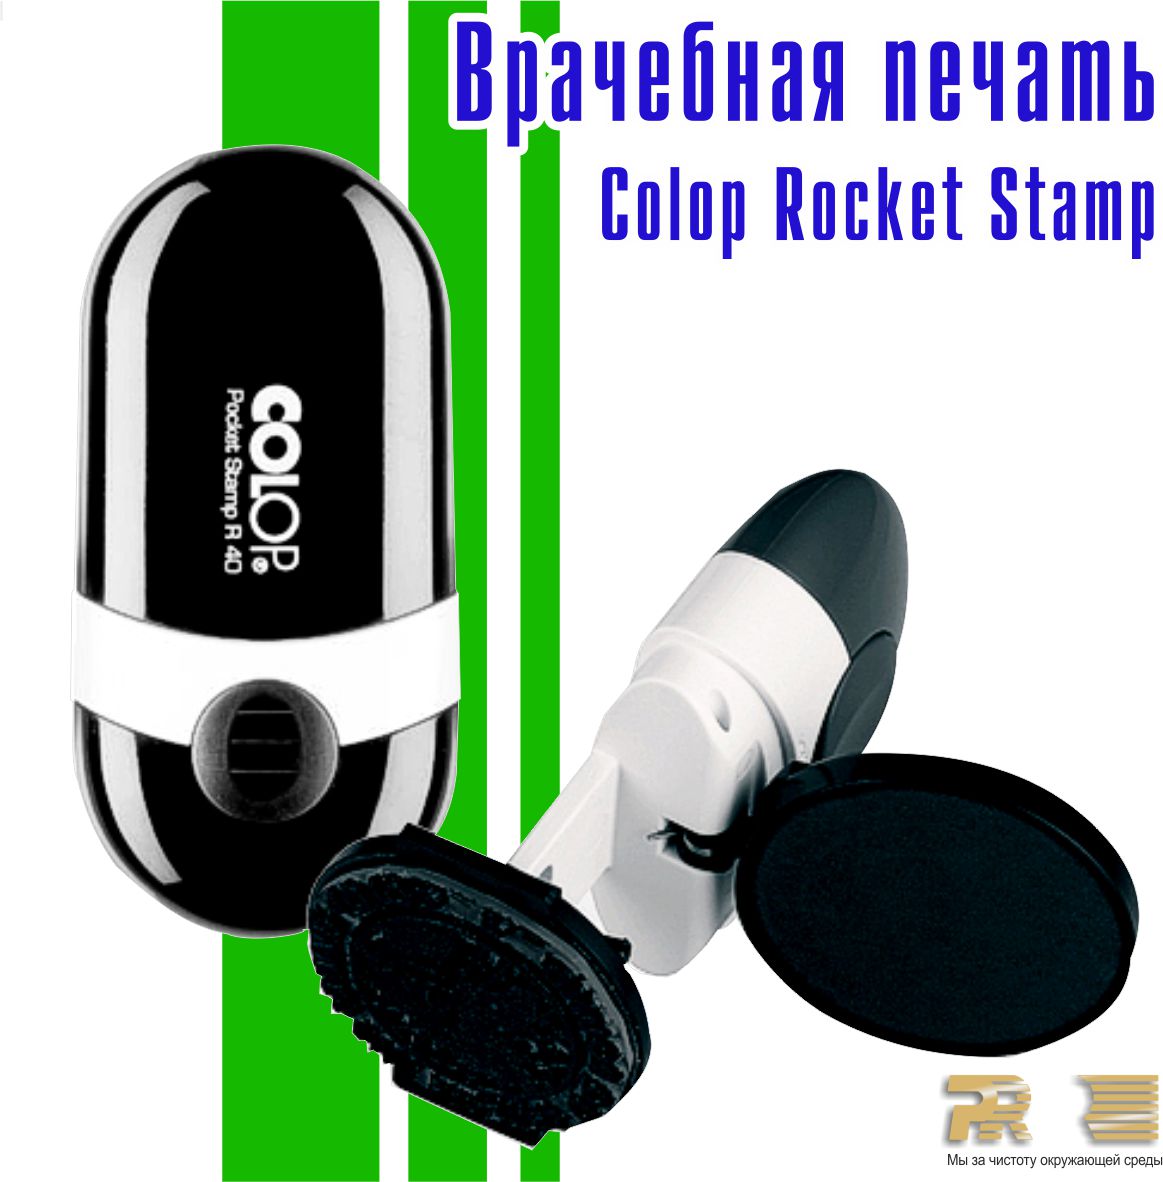 COLOP Pocket Stamp 